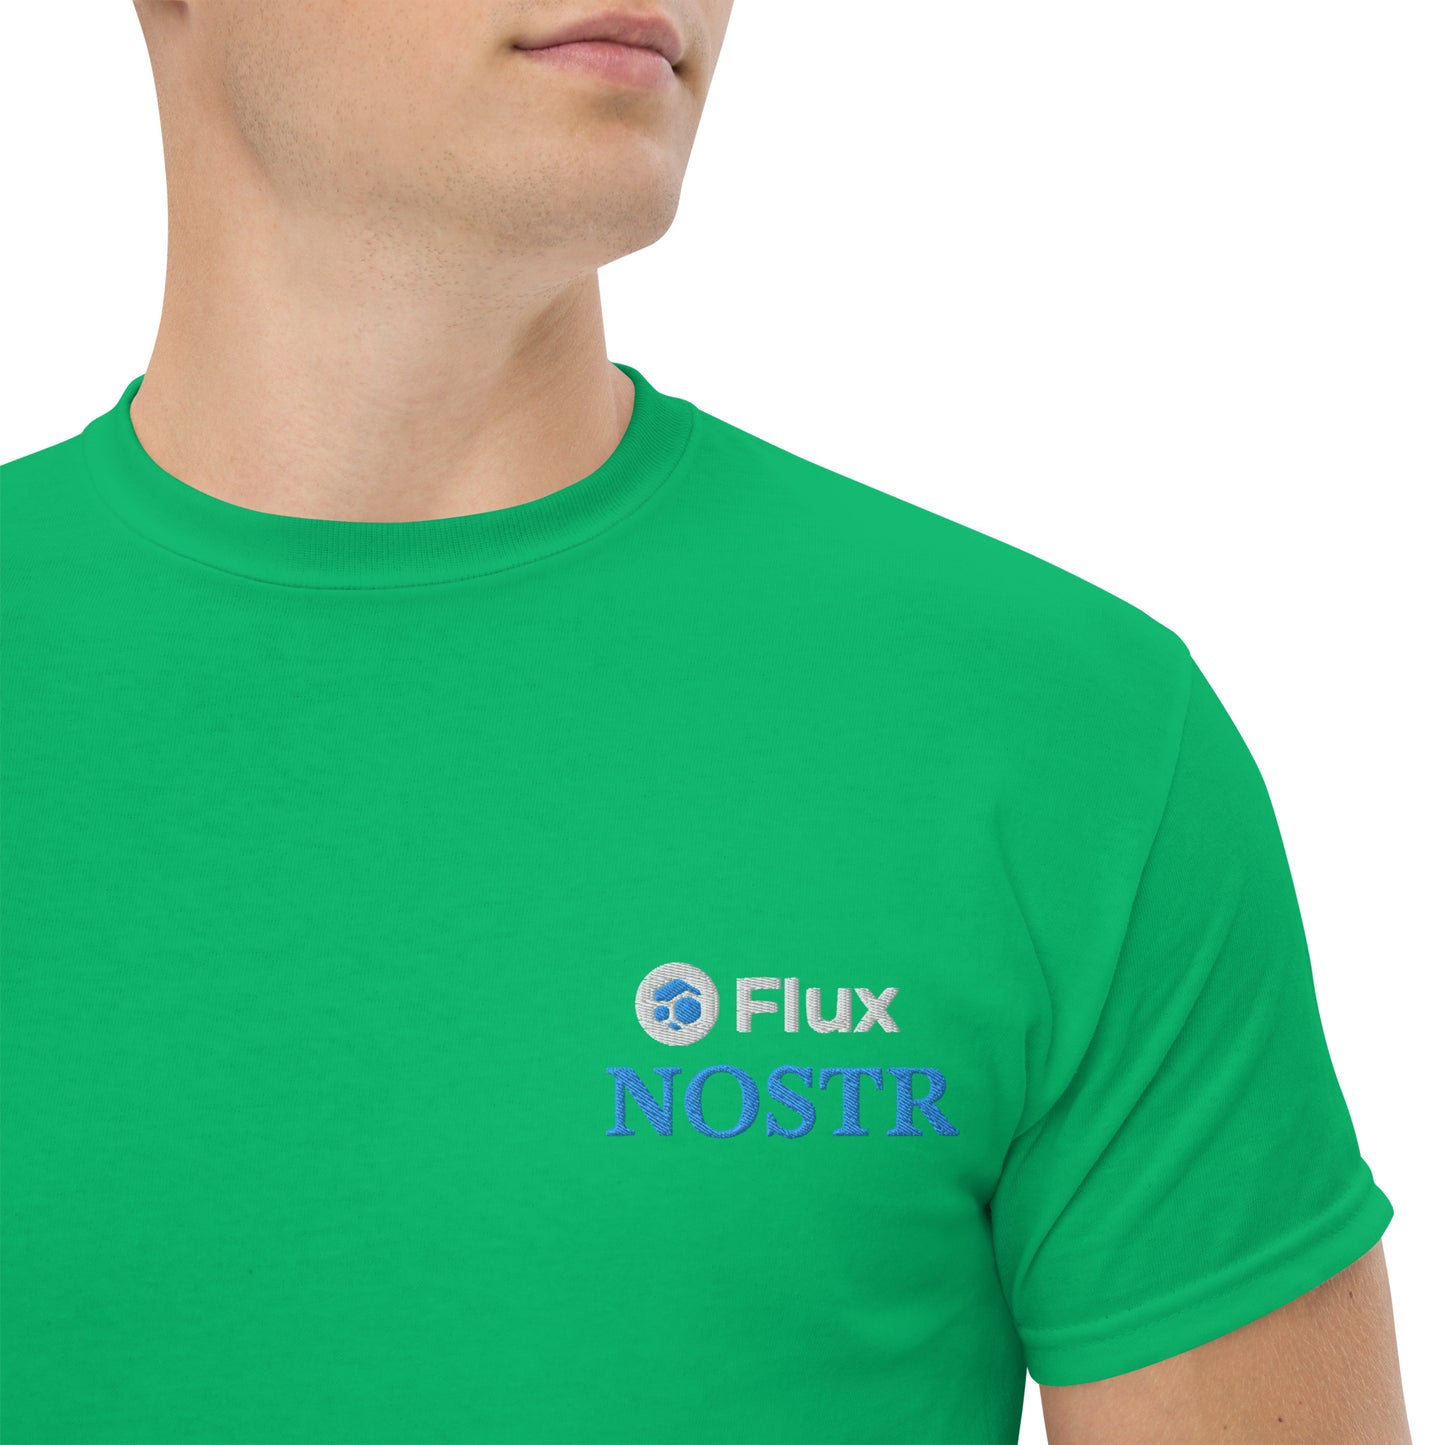 FLUX “Flux x Nostr” Men's Classic Tee